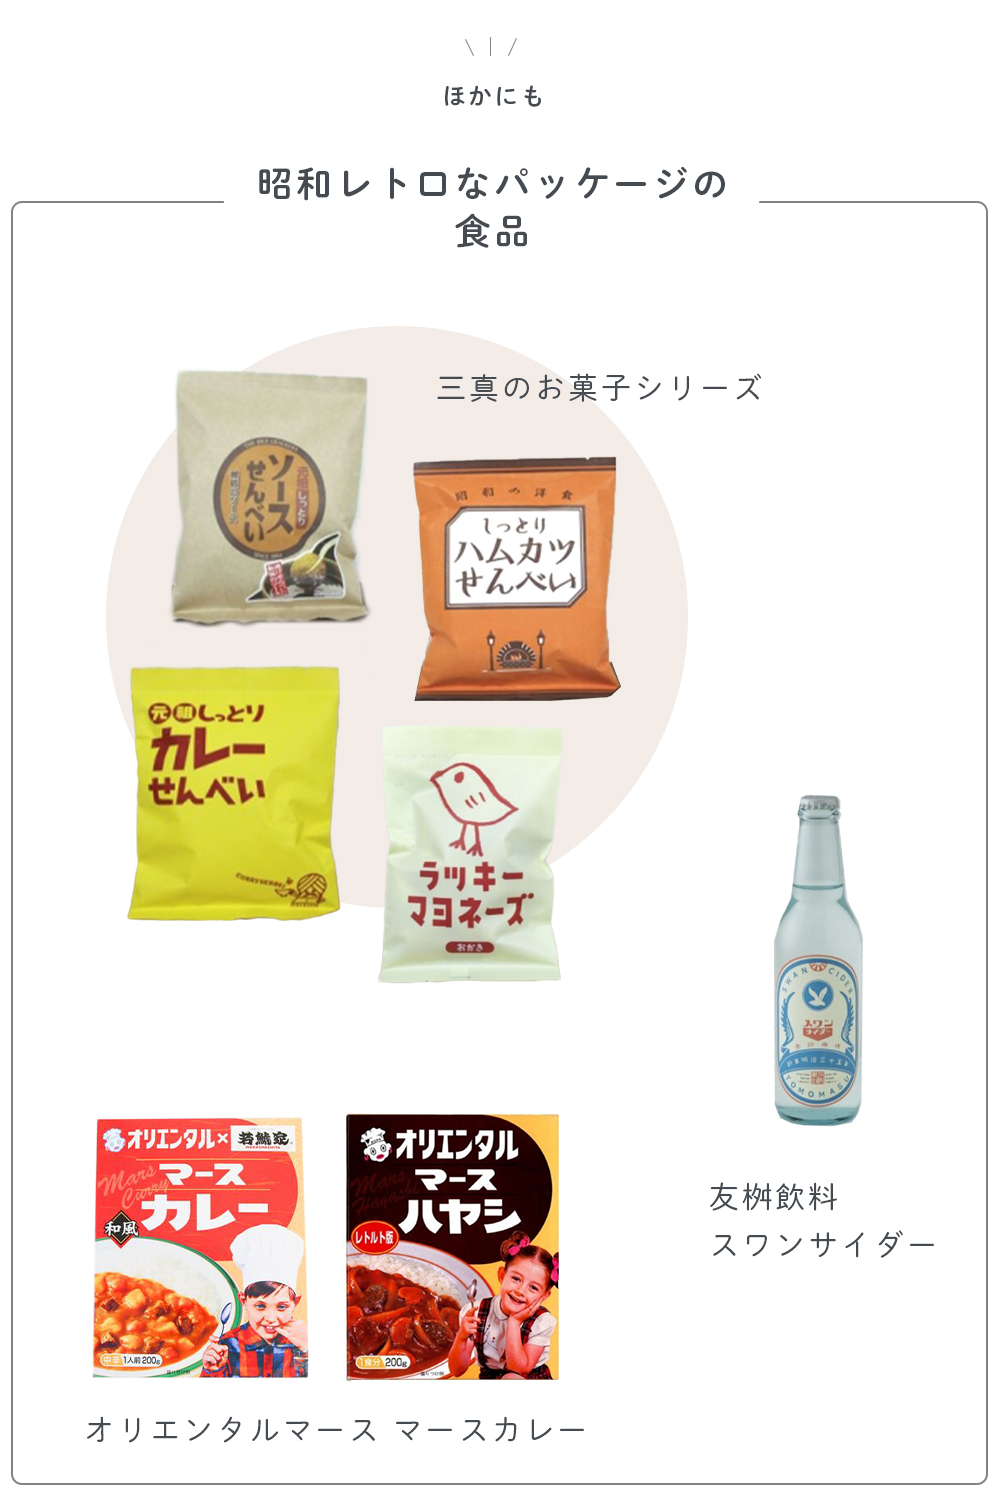 昭和レトロパッケージの食品